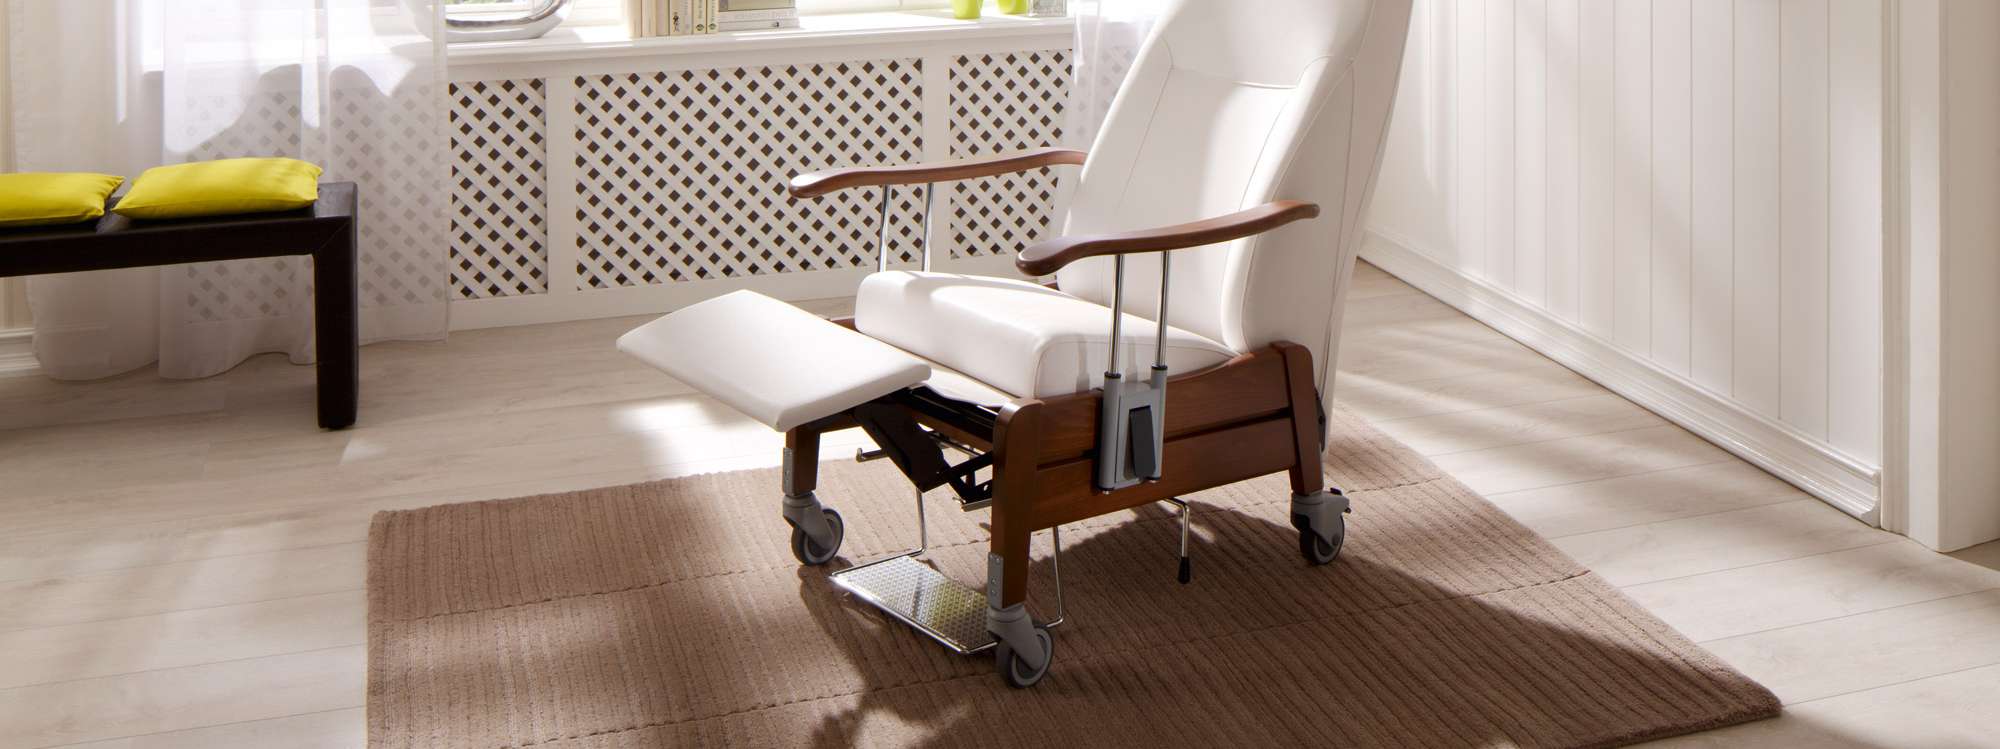 Position confortable automatique du fauteuil de transport Benivo relax